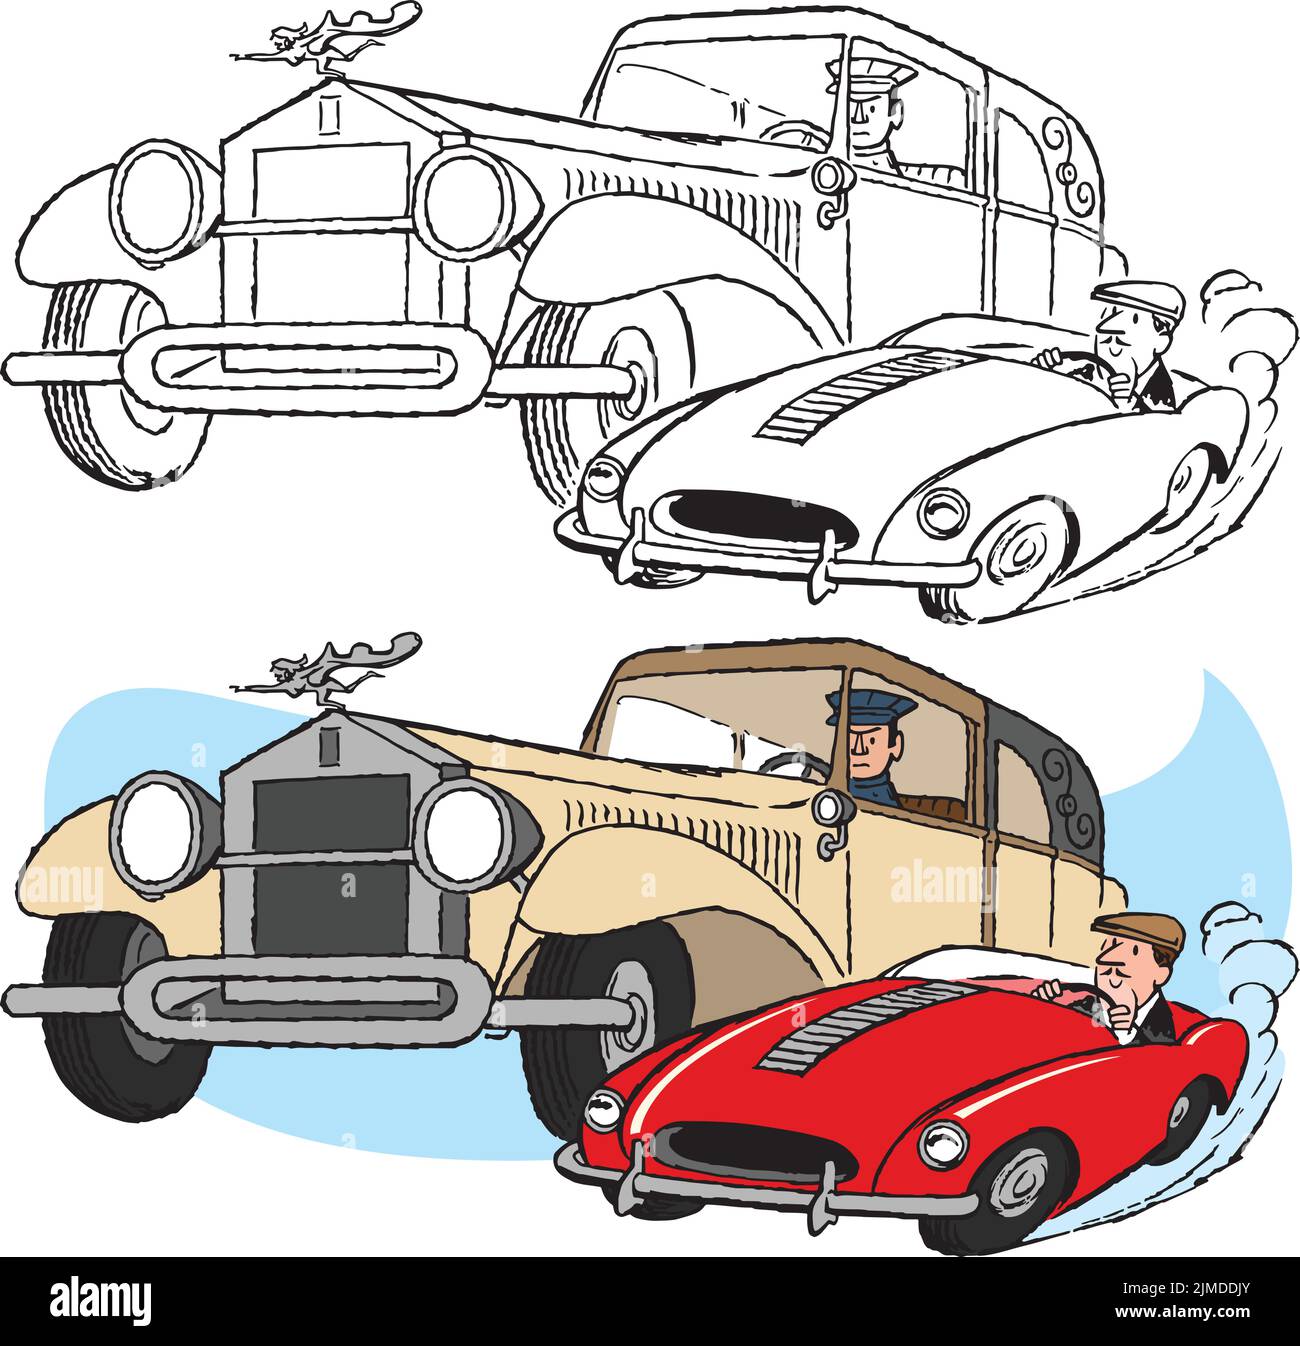 Ein Vintage Retro-Cartoon eines Sportwagens, der an einem älteren Jalopy vorbeirast und überholen soll. Stock Vektor